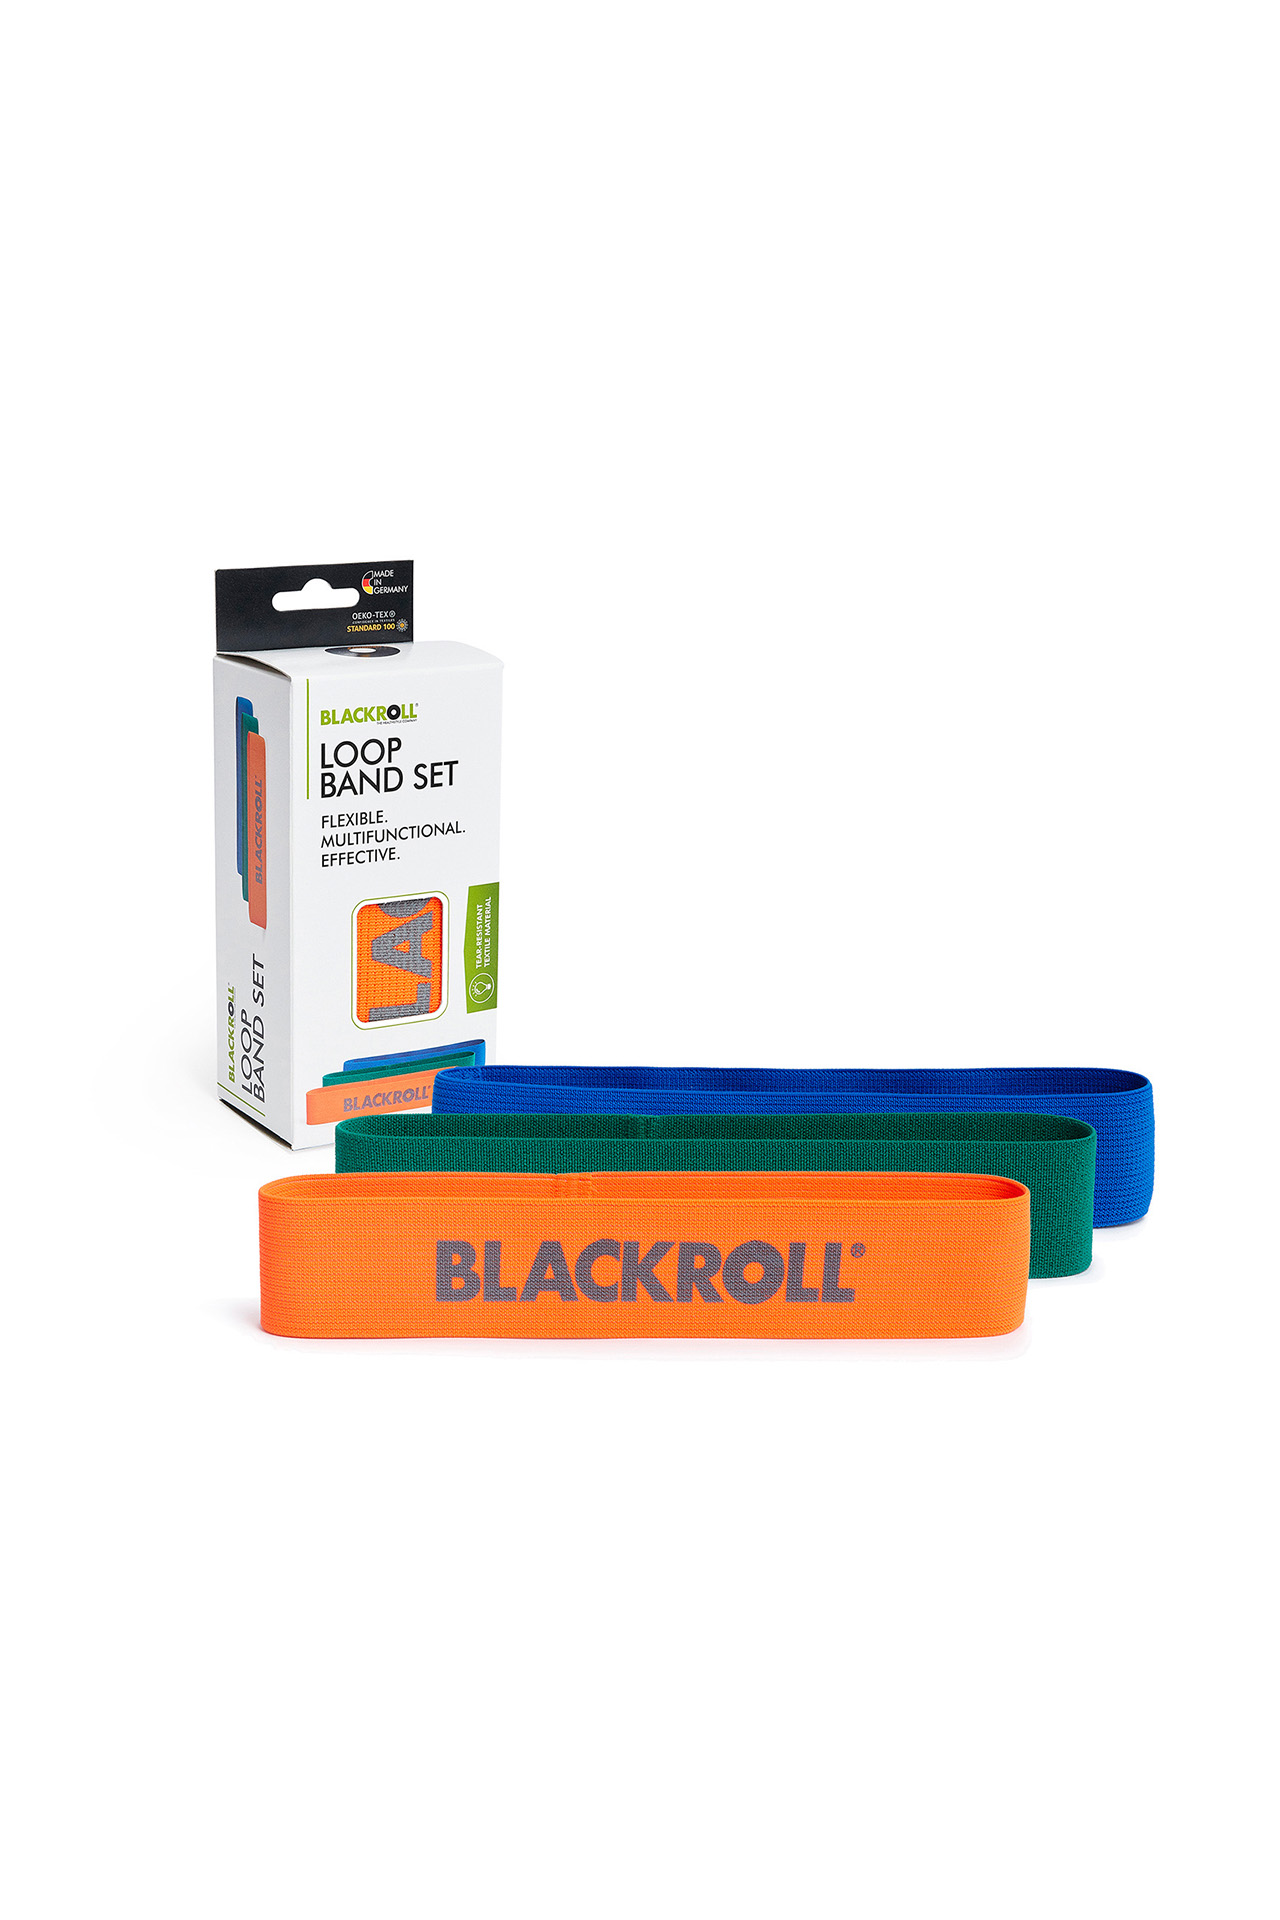 blackroll loop band 3er set training fengbao shop 1080 verpackung wien